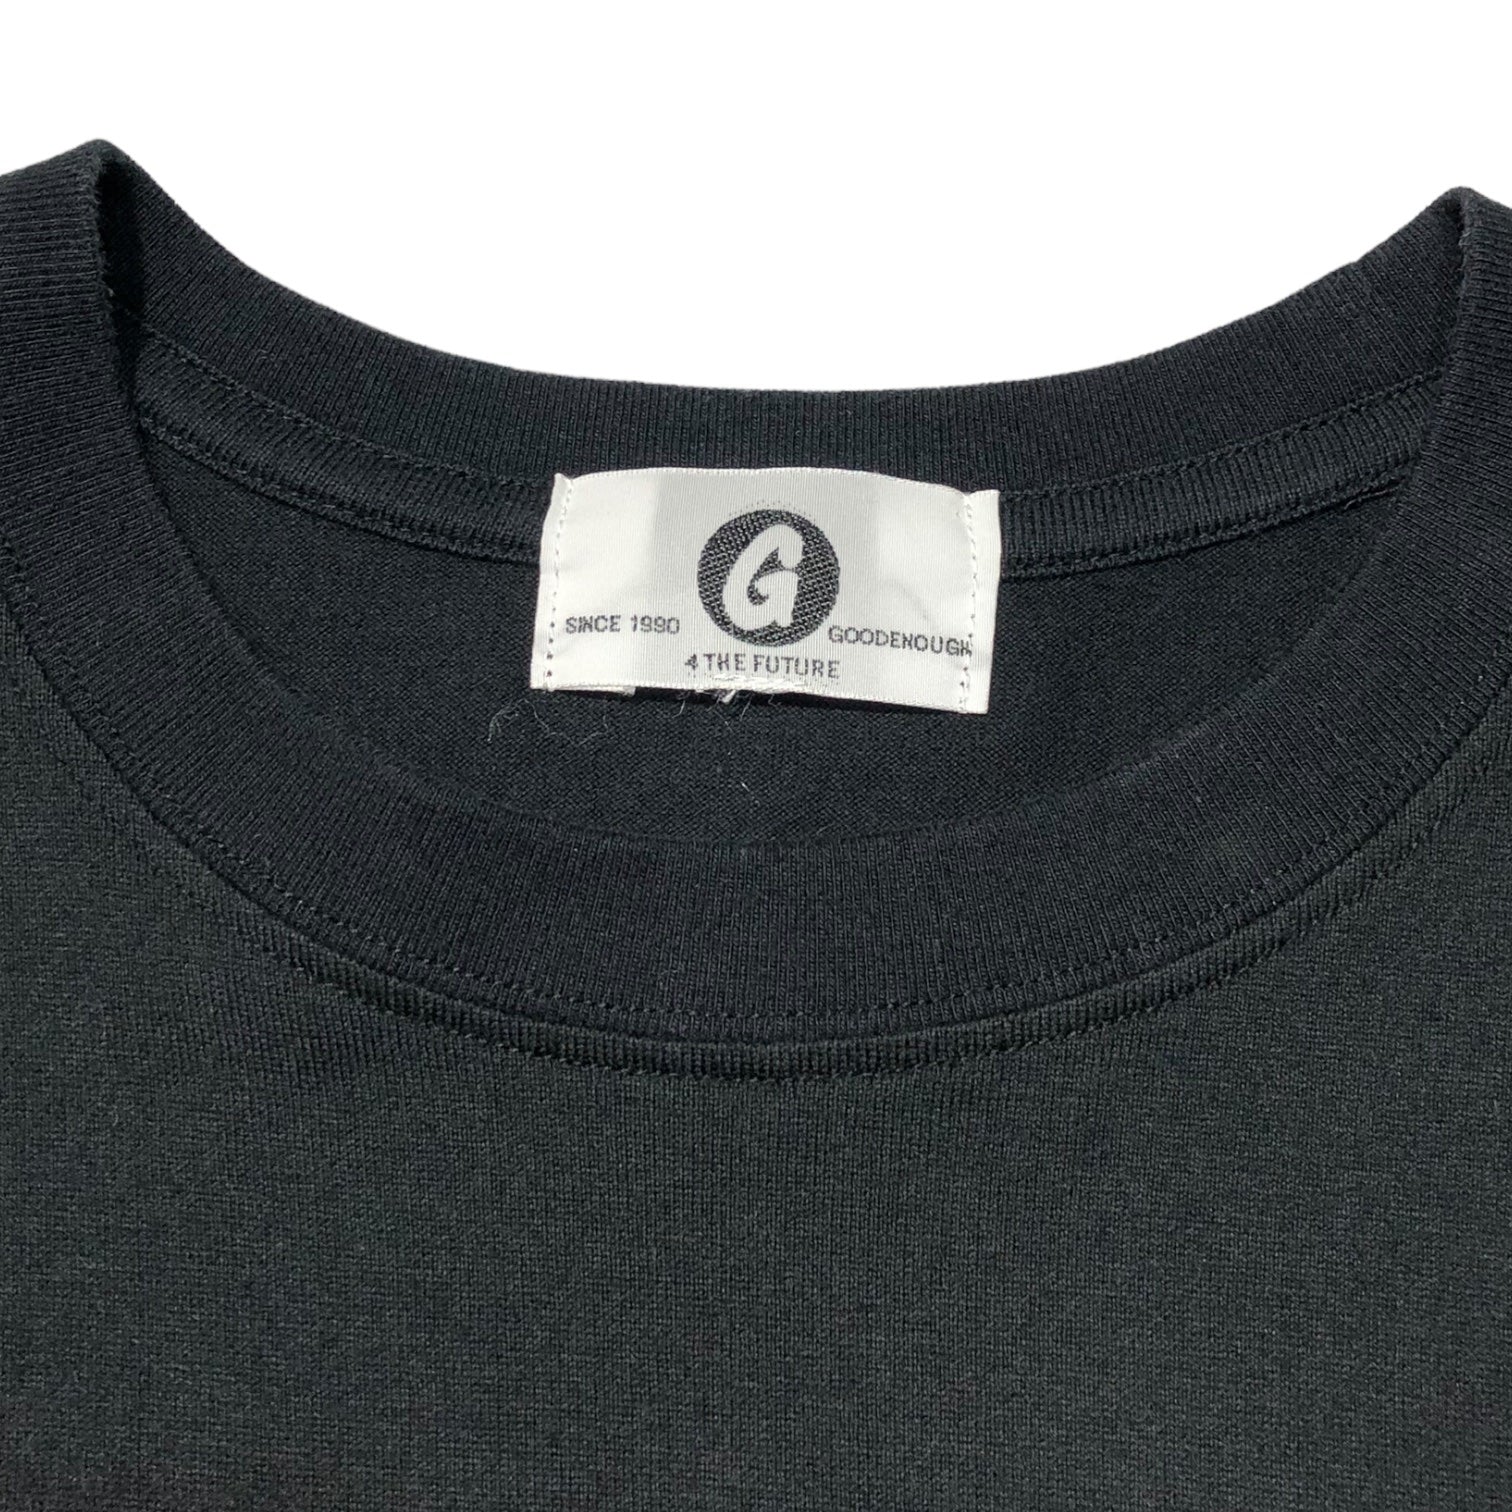 GOODENOUGH(グッドイナフ) 15SS REACTIVE TEE リアクティブ Tシャツ 90年代復刻 GE-157010 S ブラック 品質表示タグ無